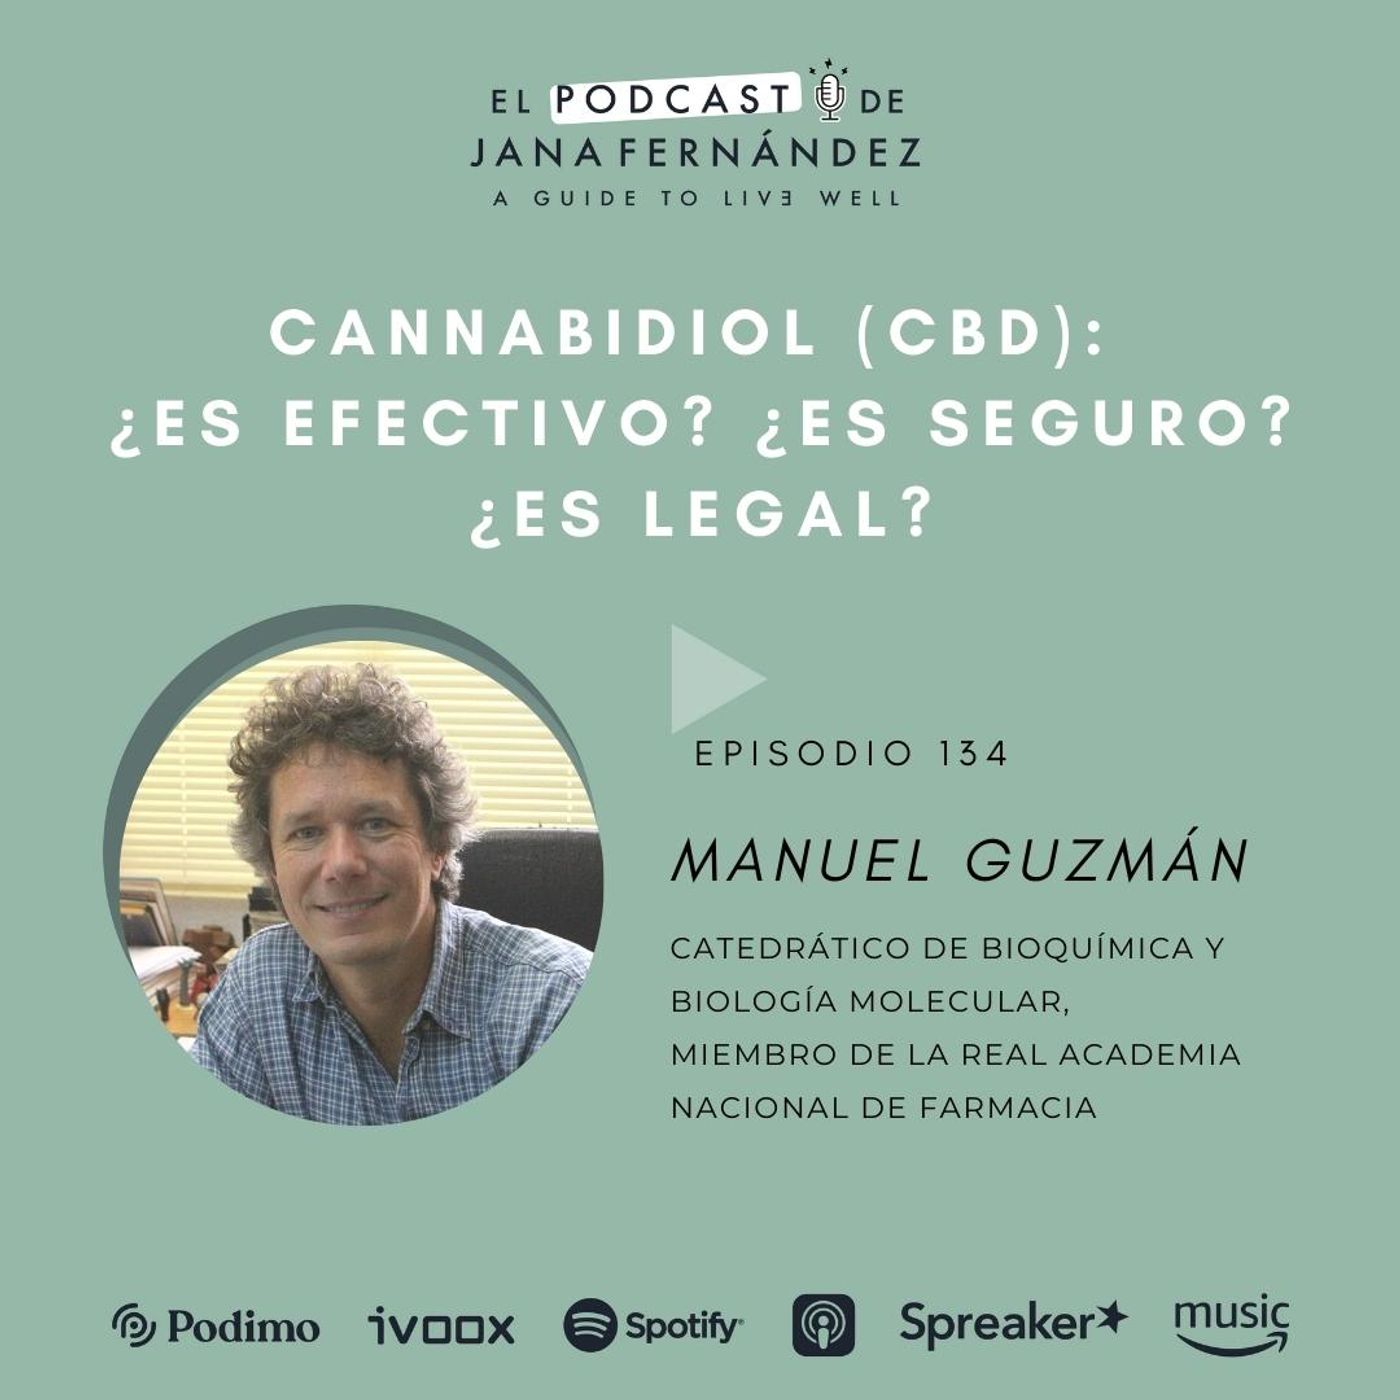 Cannabidiol (CBD): ¿es efectivo? ¿es seguro? ¿es legal?, con el profesor Manuel Guzmán